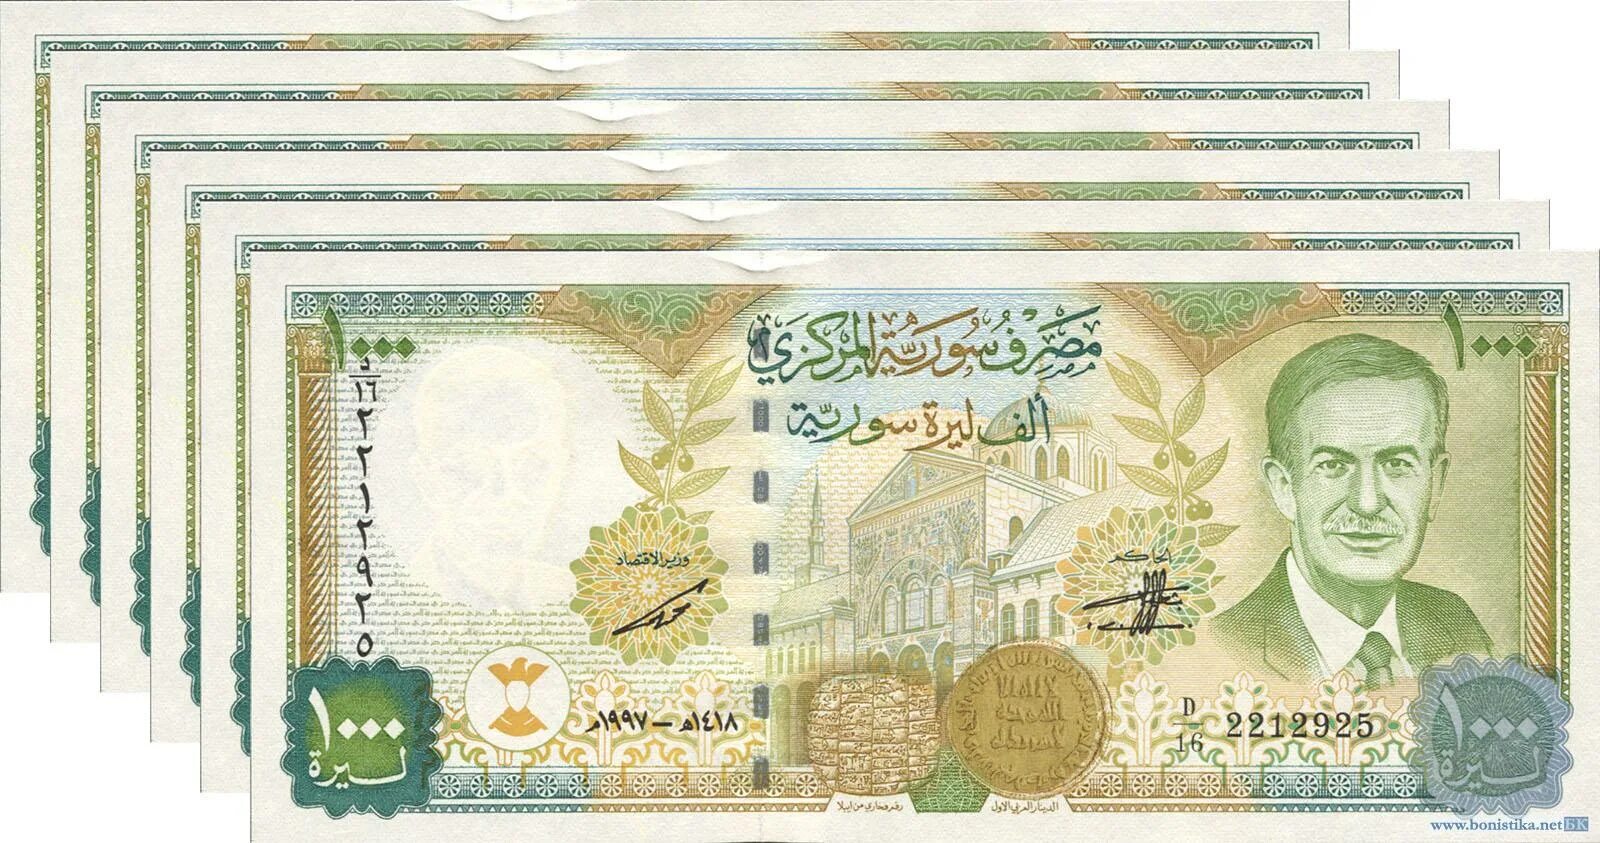 1000 Сирийских фунтов. Сирия 1000 фунтов 1997 банкнота. 1000 Сирийских фунтов купюра. Сирия 1000 фунтов 1997. 500 фунтов в рублях